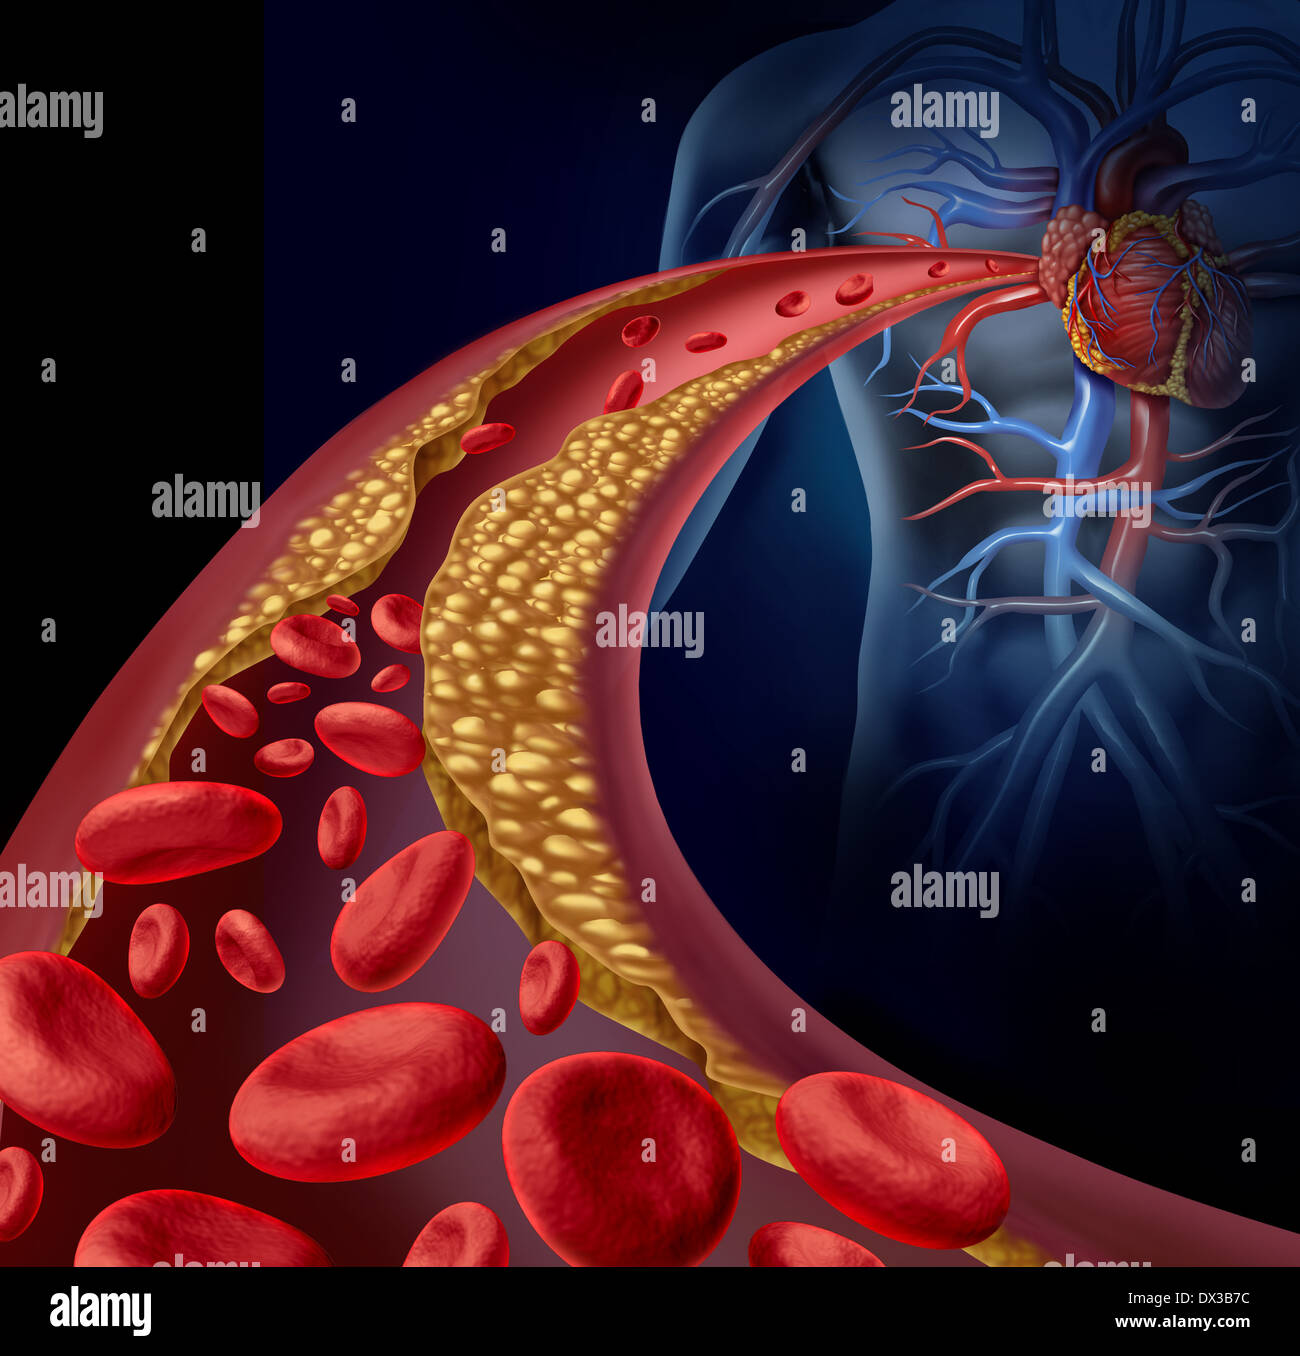 Arteria intasati e aterosclerosi malattia concetto medico con un tridimensionale di arteria umana con cellule del sangue che è bloccato dalla formazione di placca di colesterolo come un simbolo di arteriosclerotica malattie vascolari. Foto Stock